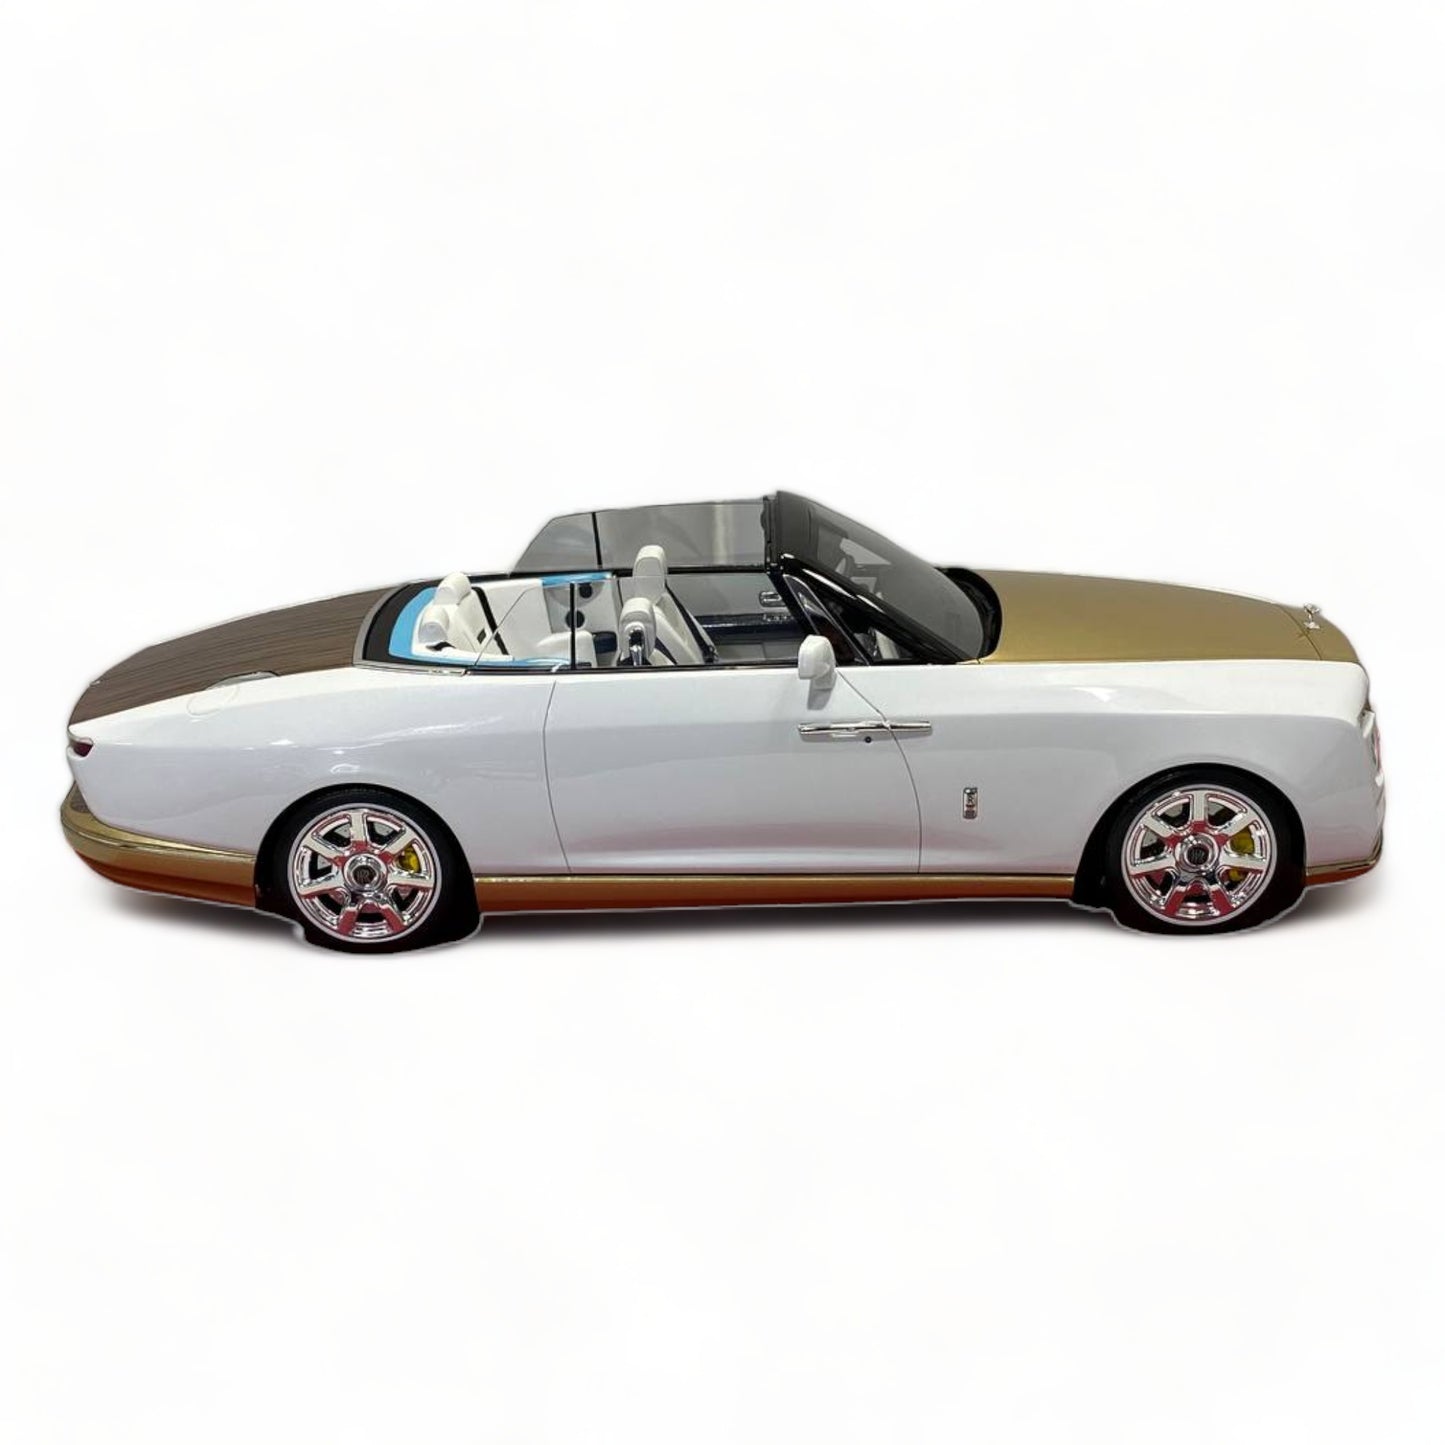 1/18 Rolls-Royce BOAT TAIL WHITE Scale Model Car